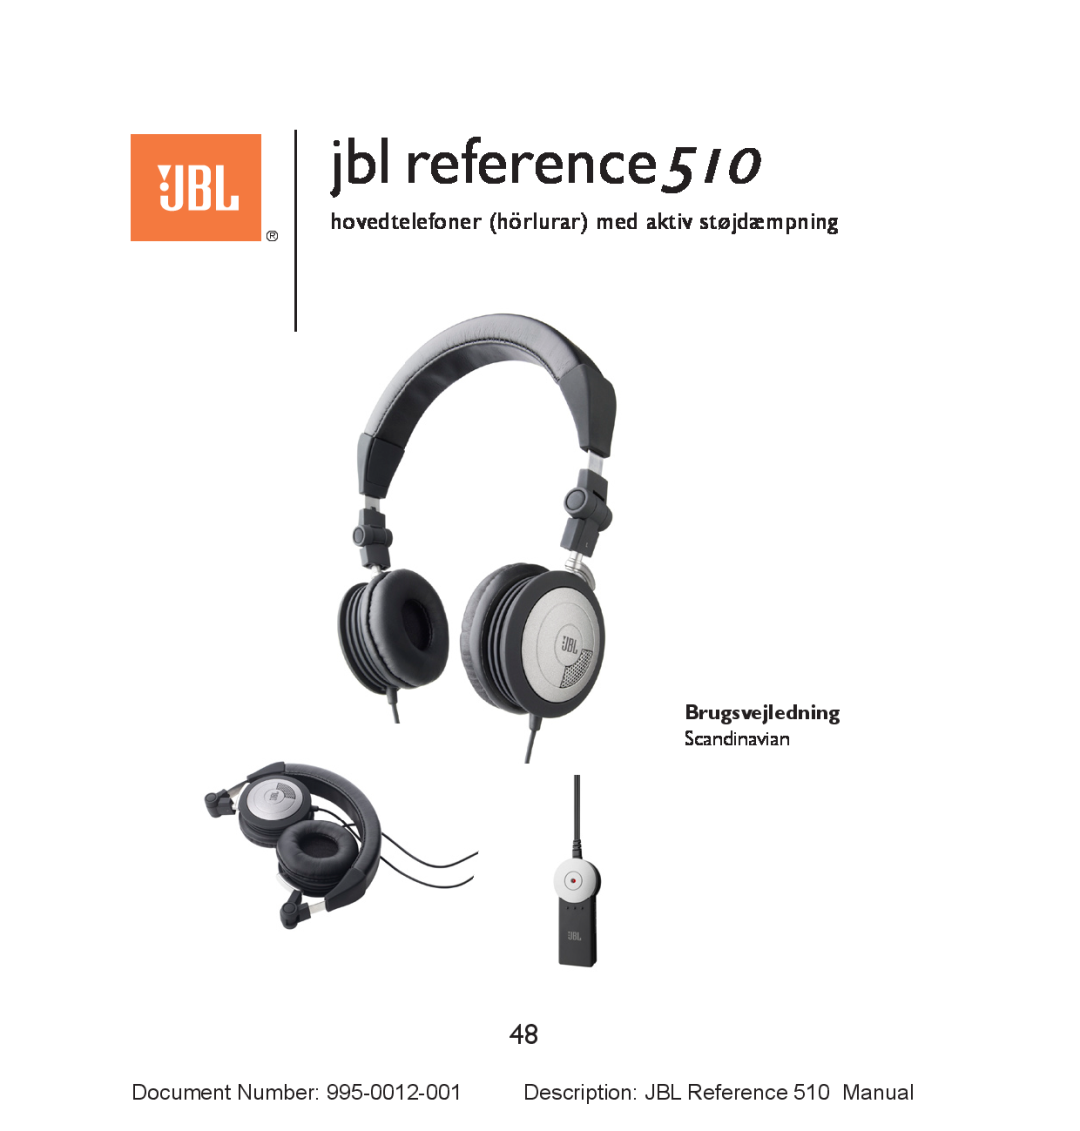 JBL manual jbl reference510, hovedtelefoner hörlurar med aktiv støjdæmpning, Brugsvejledning 